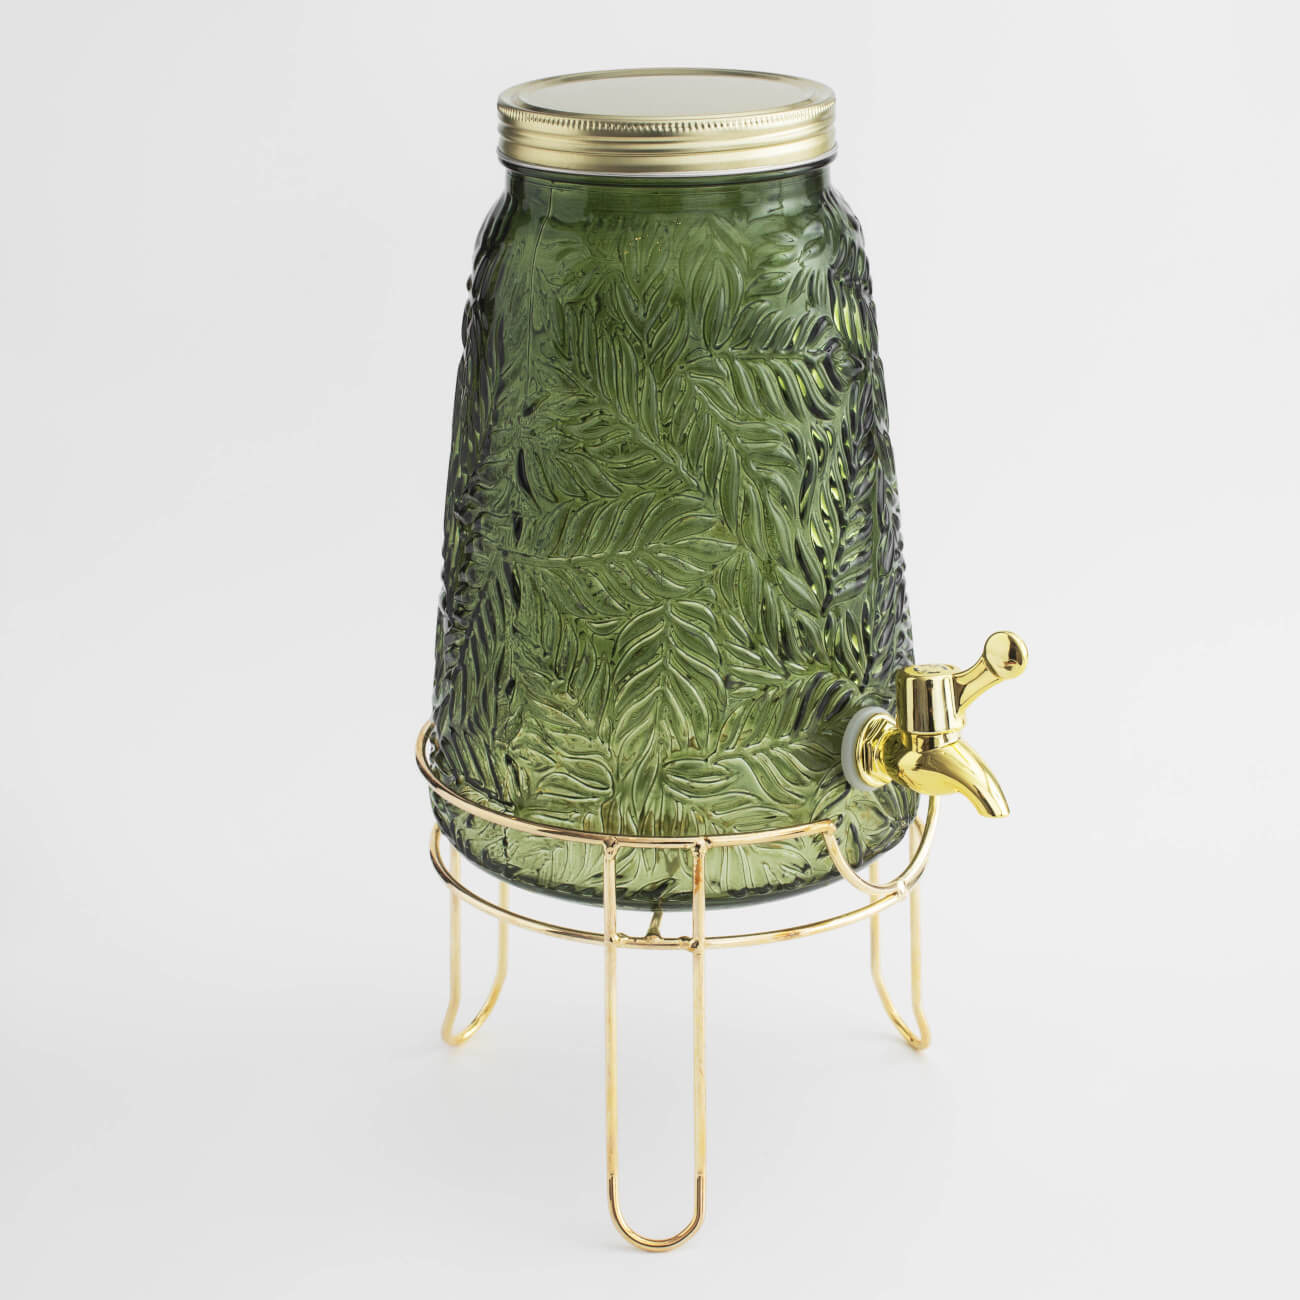 Диспенсер для напитков, 3,5 л, на подставке, стекло Р/металл, темно-зеленый, Листья, Tropical leaves